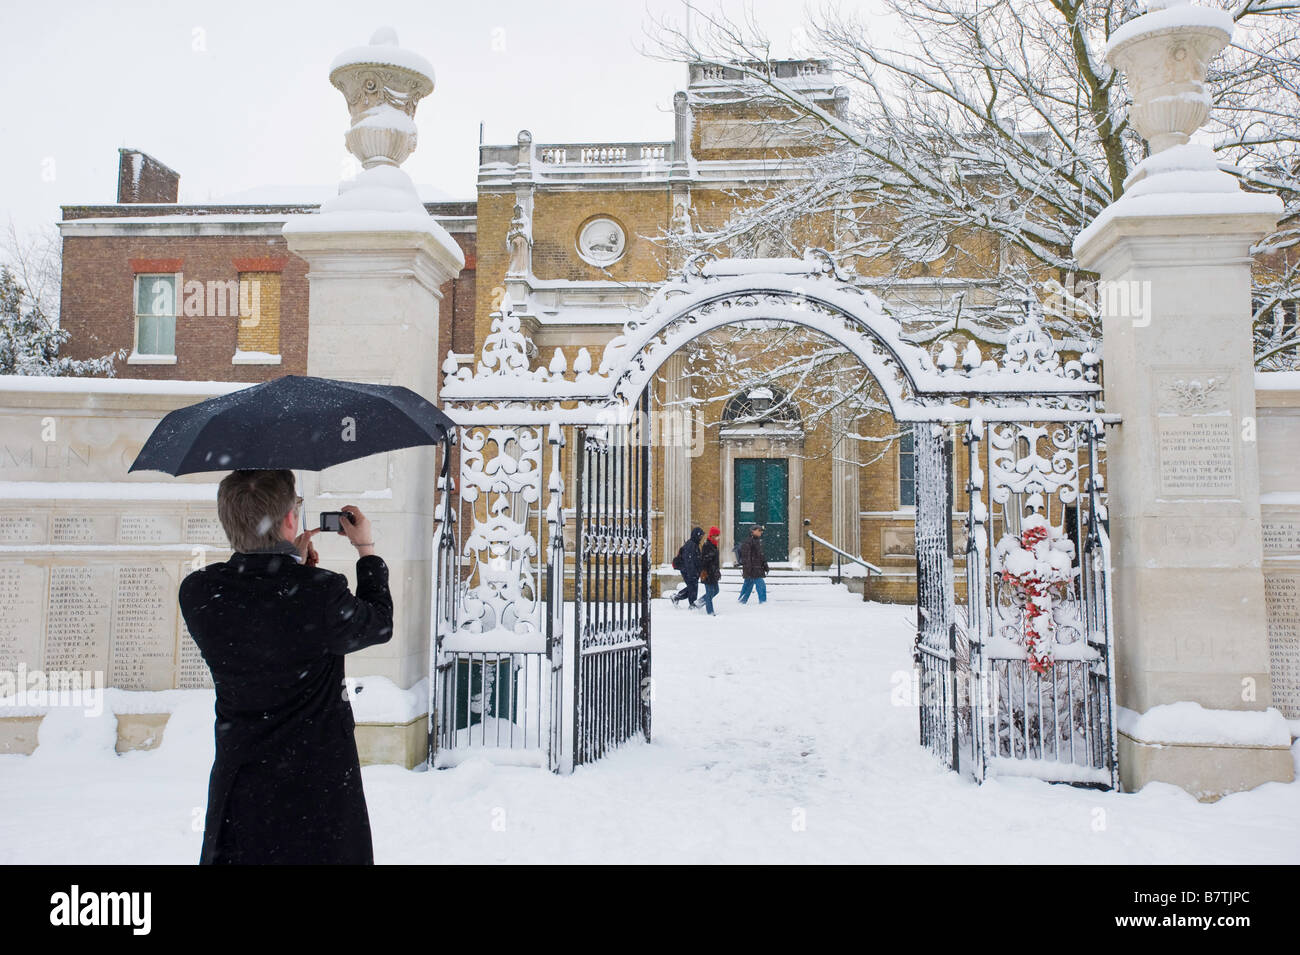 Mann ist Pitzahanger Manor in Walpole Park Februar verschneiten Ealing London W5 Vereinigtes Königreich fotografieren. Stockfoto